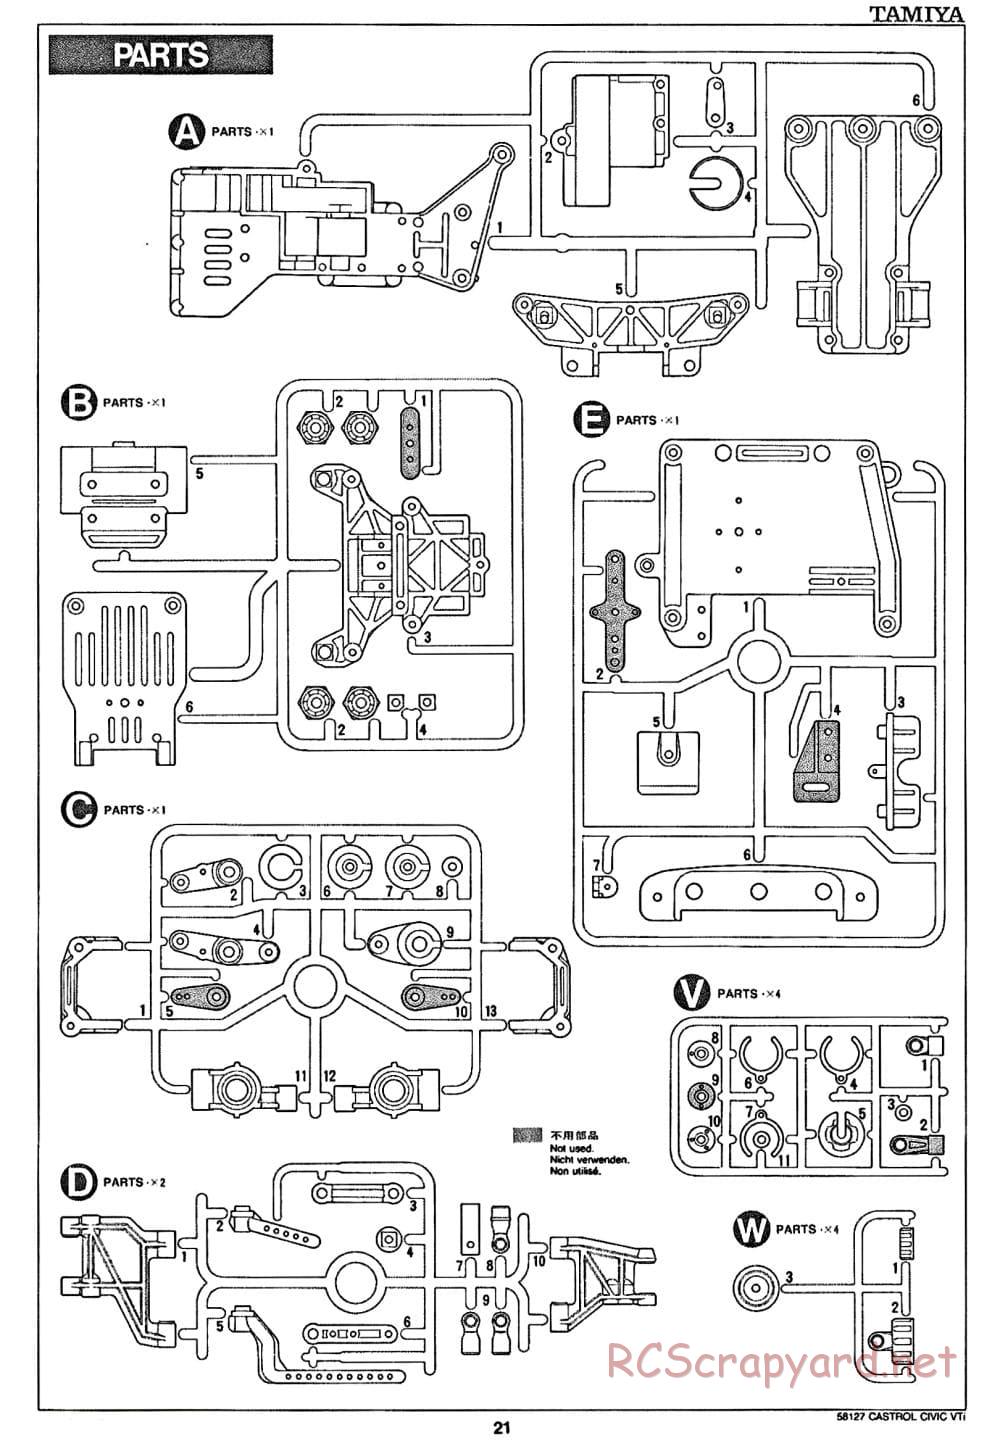 Tamiya - Castrol Honda Civic VTi - FF-01 Chassis - Manual - Page 21